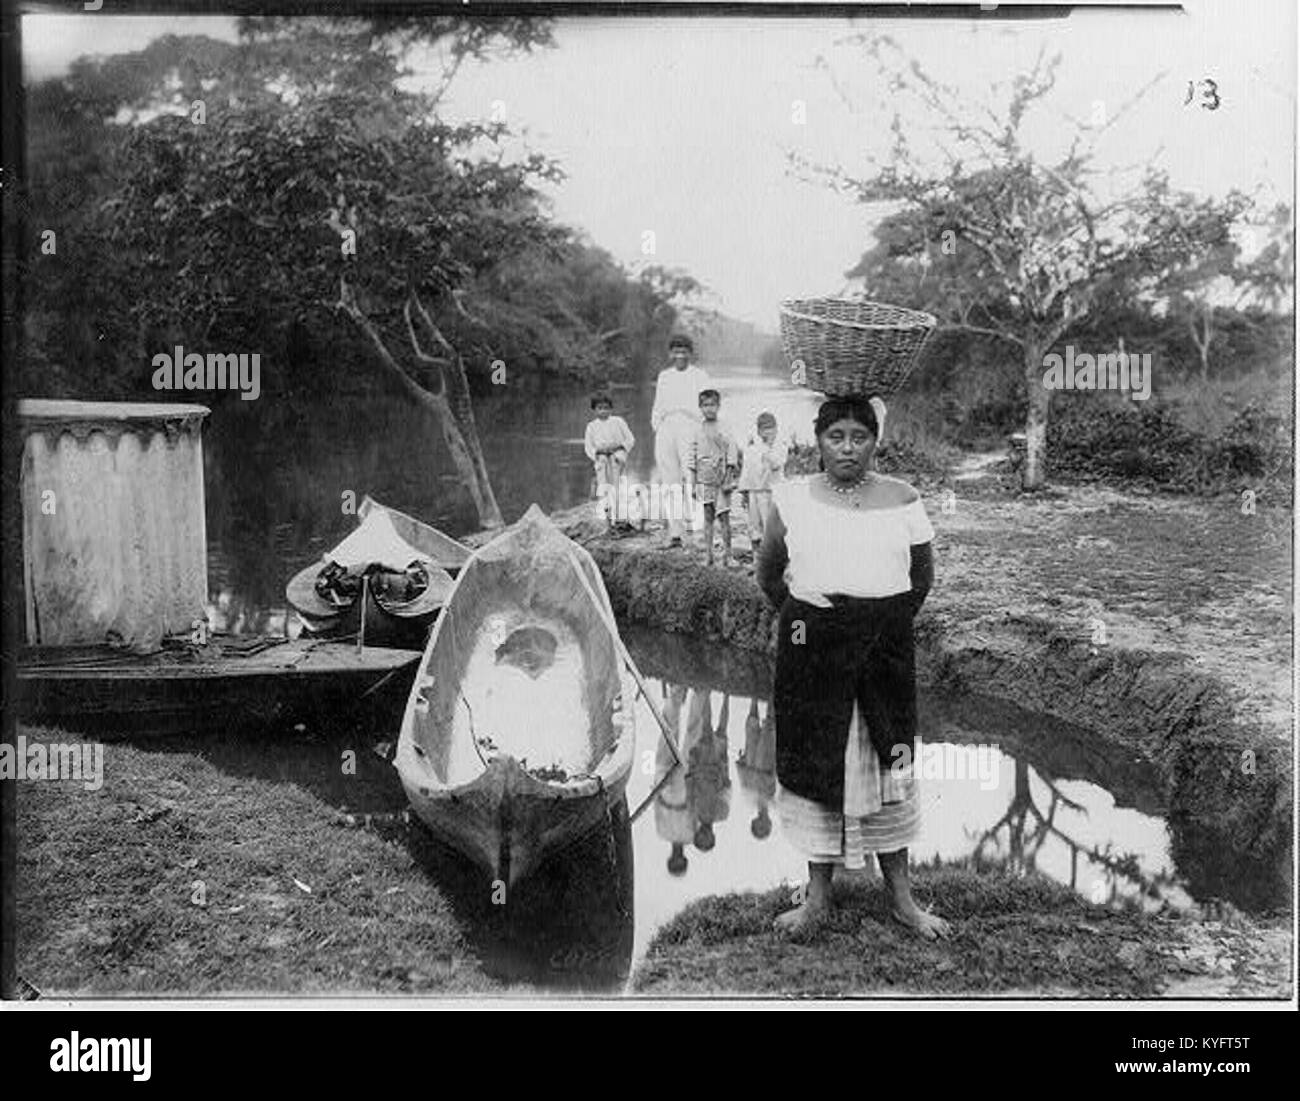 Botes en agua Imágenes de stock en blanco y negro - Alamy